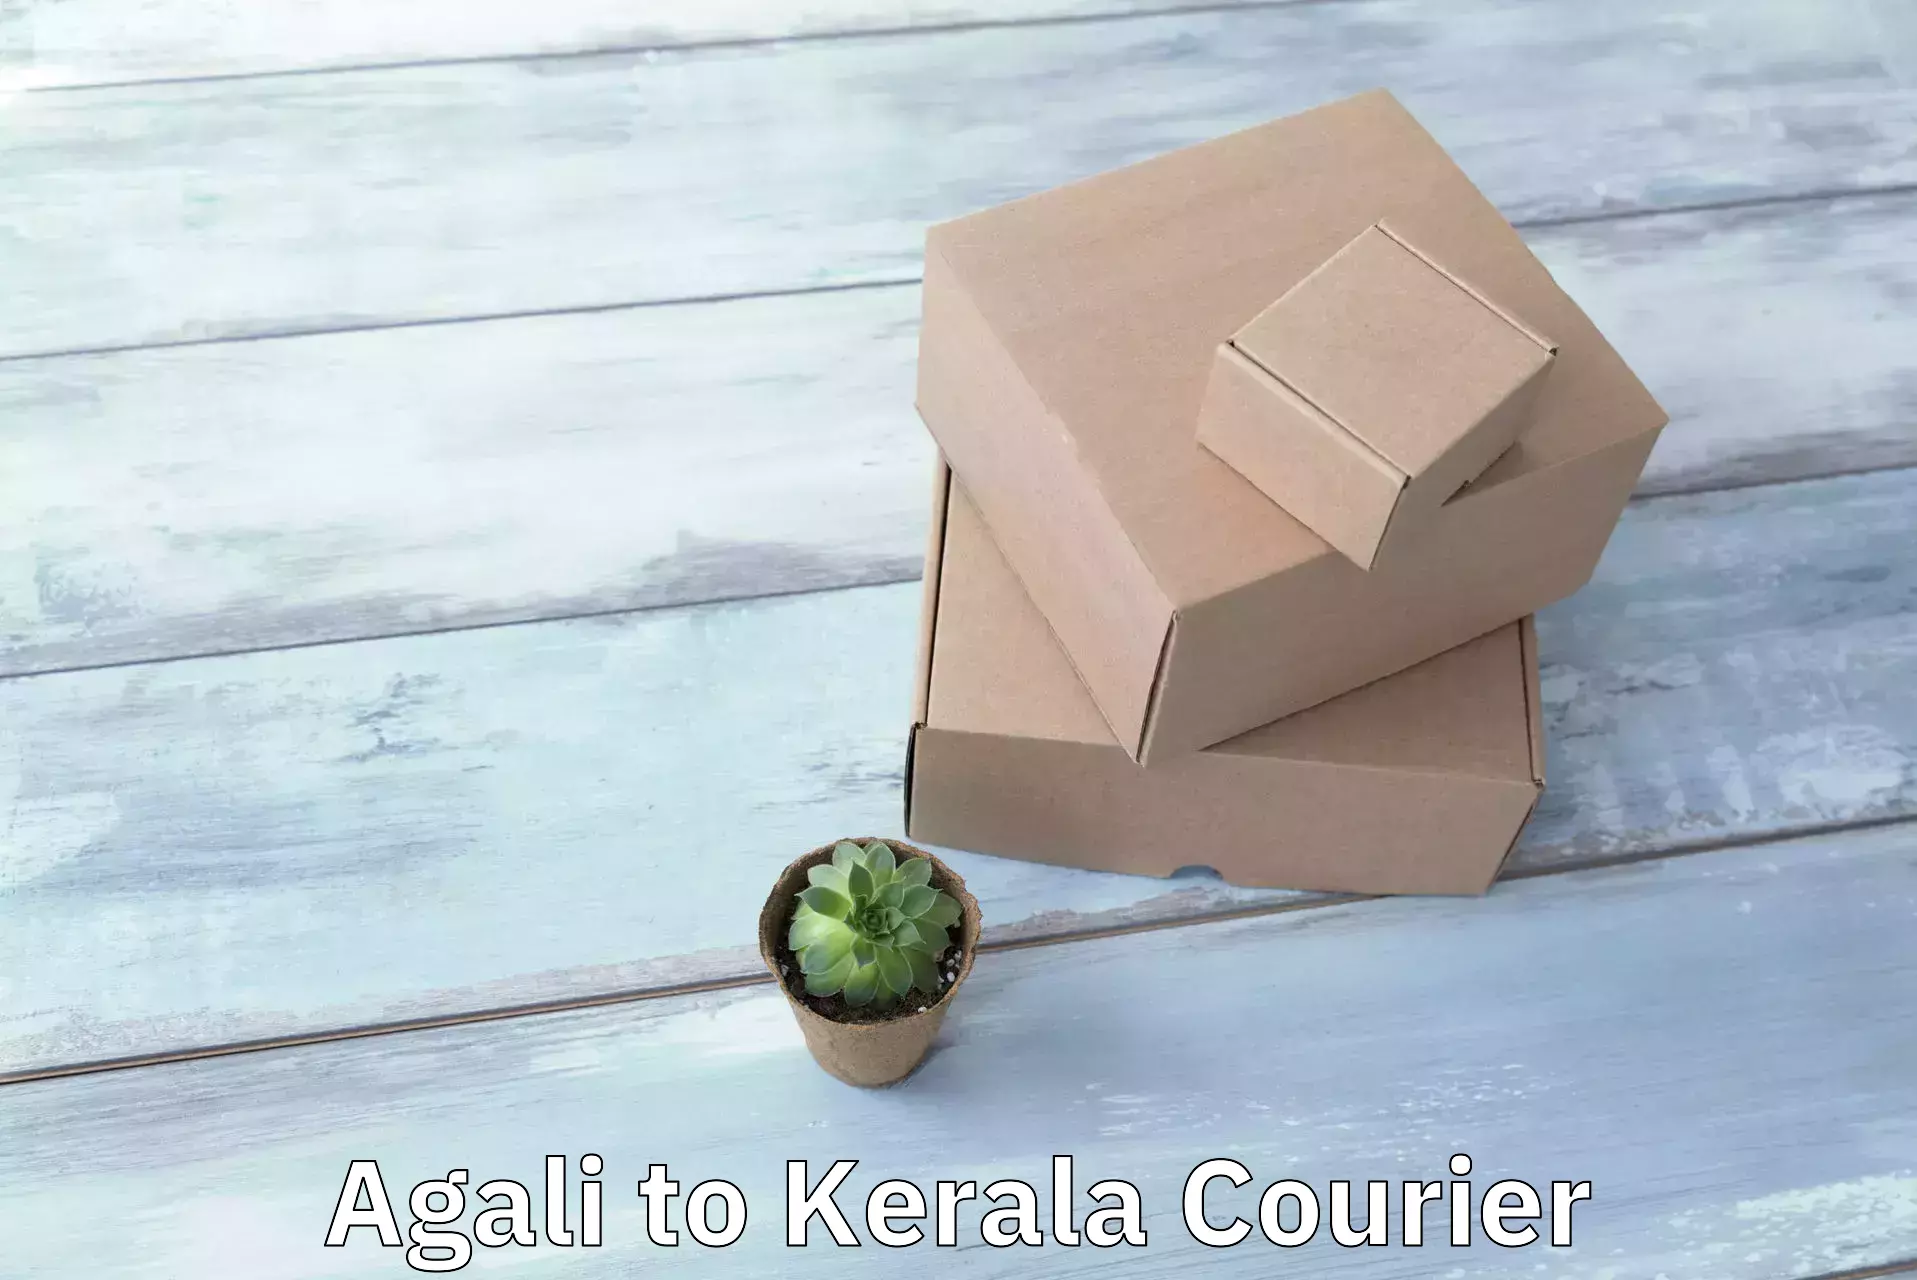 Customer-centric shipping Agali to Pallikkara